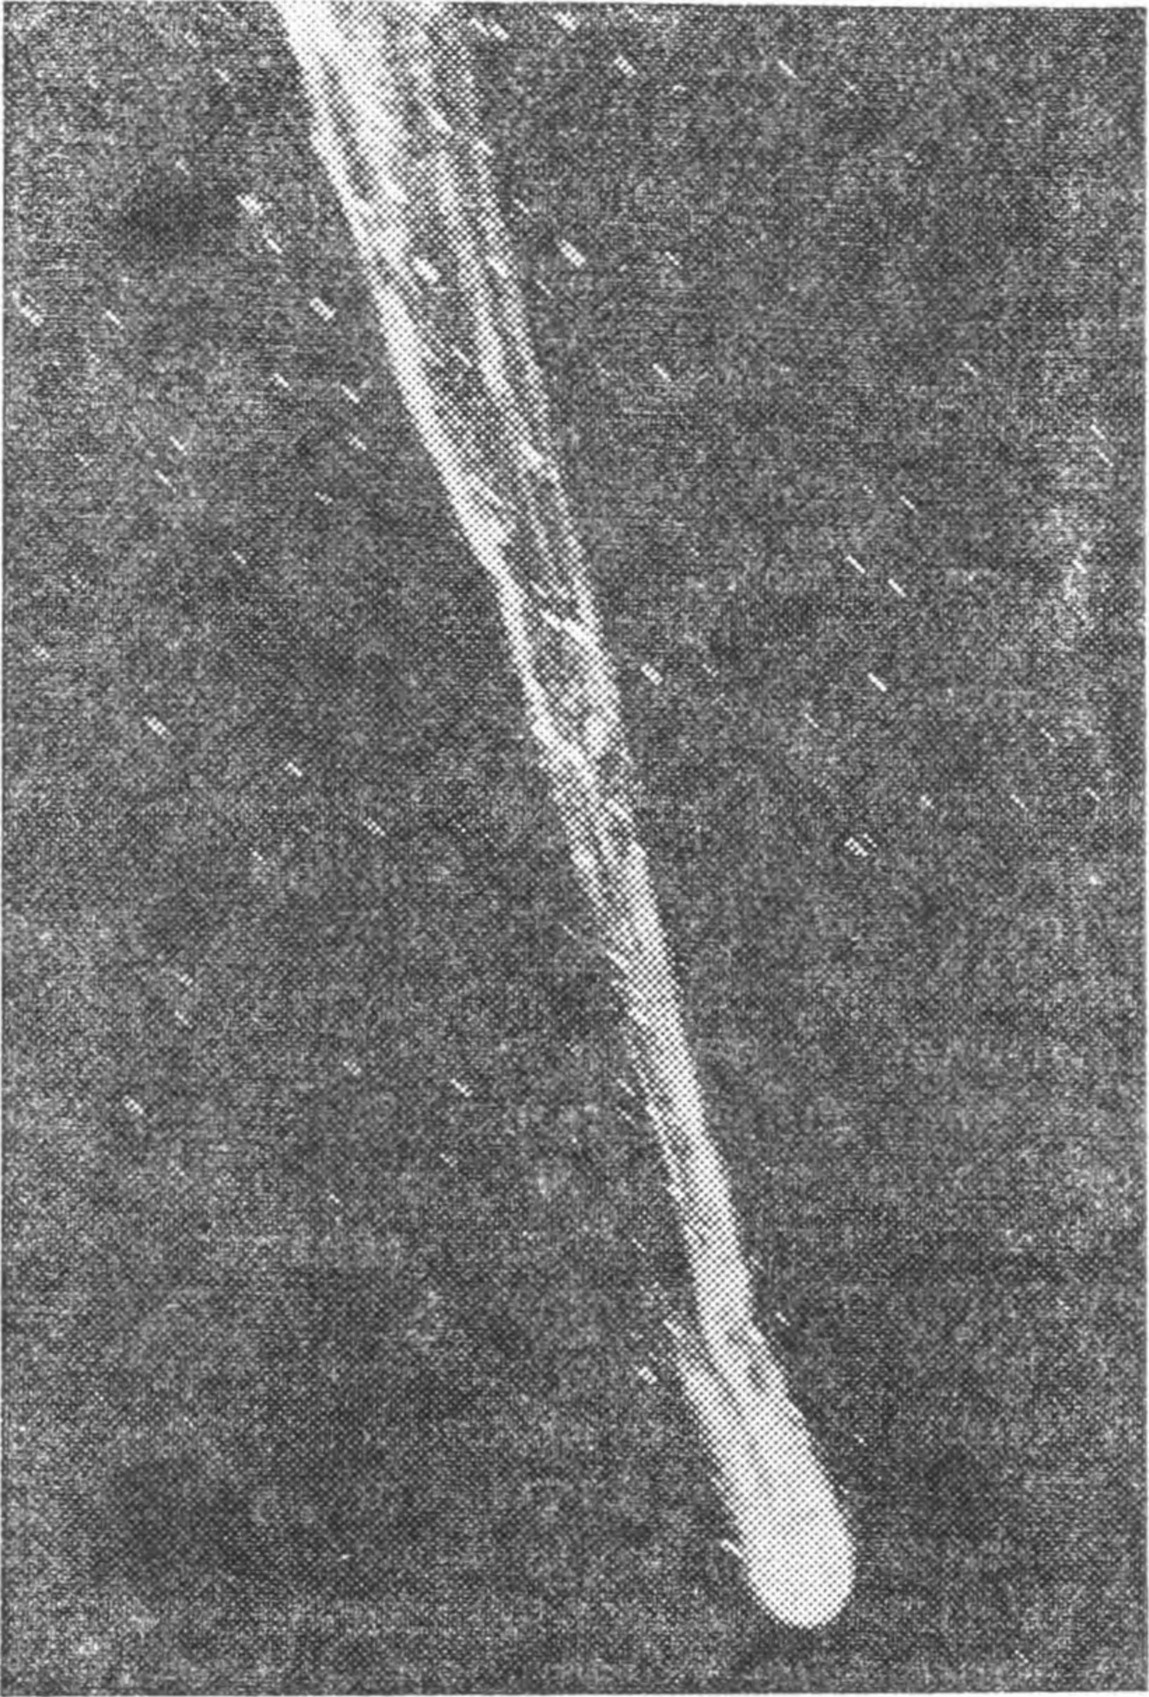 Рис. 77. Комета Галлея в 1910 г